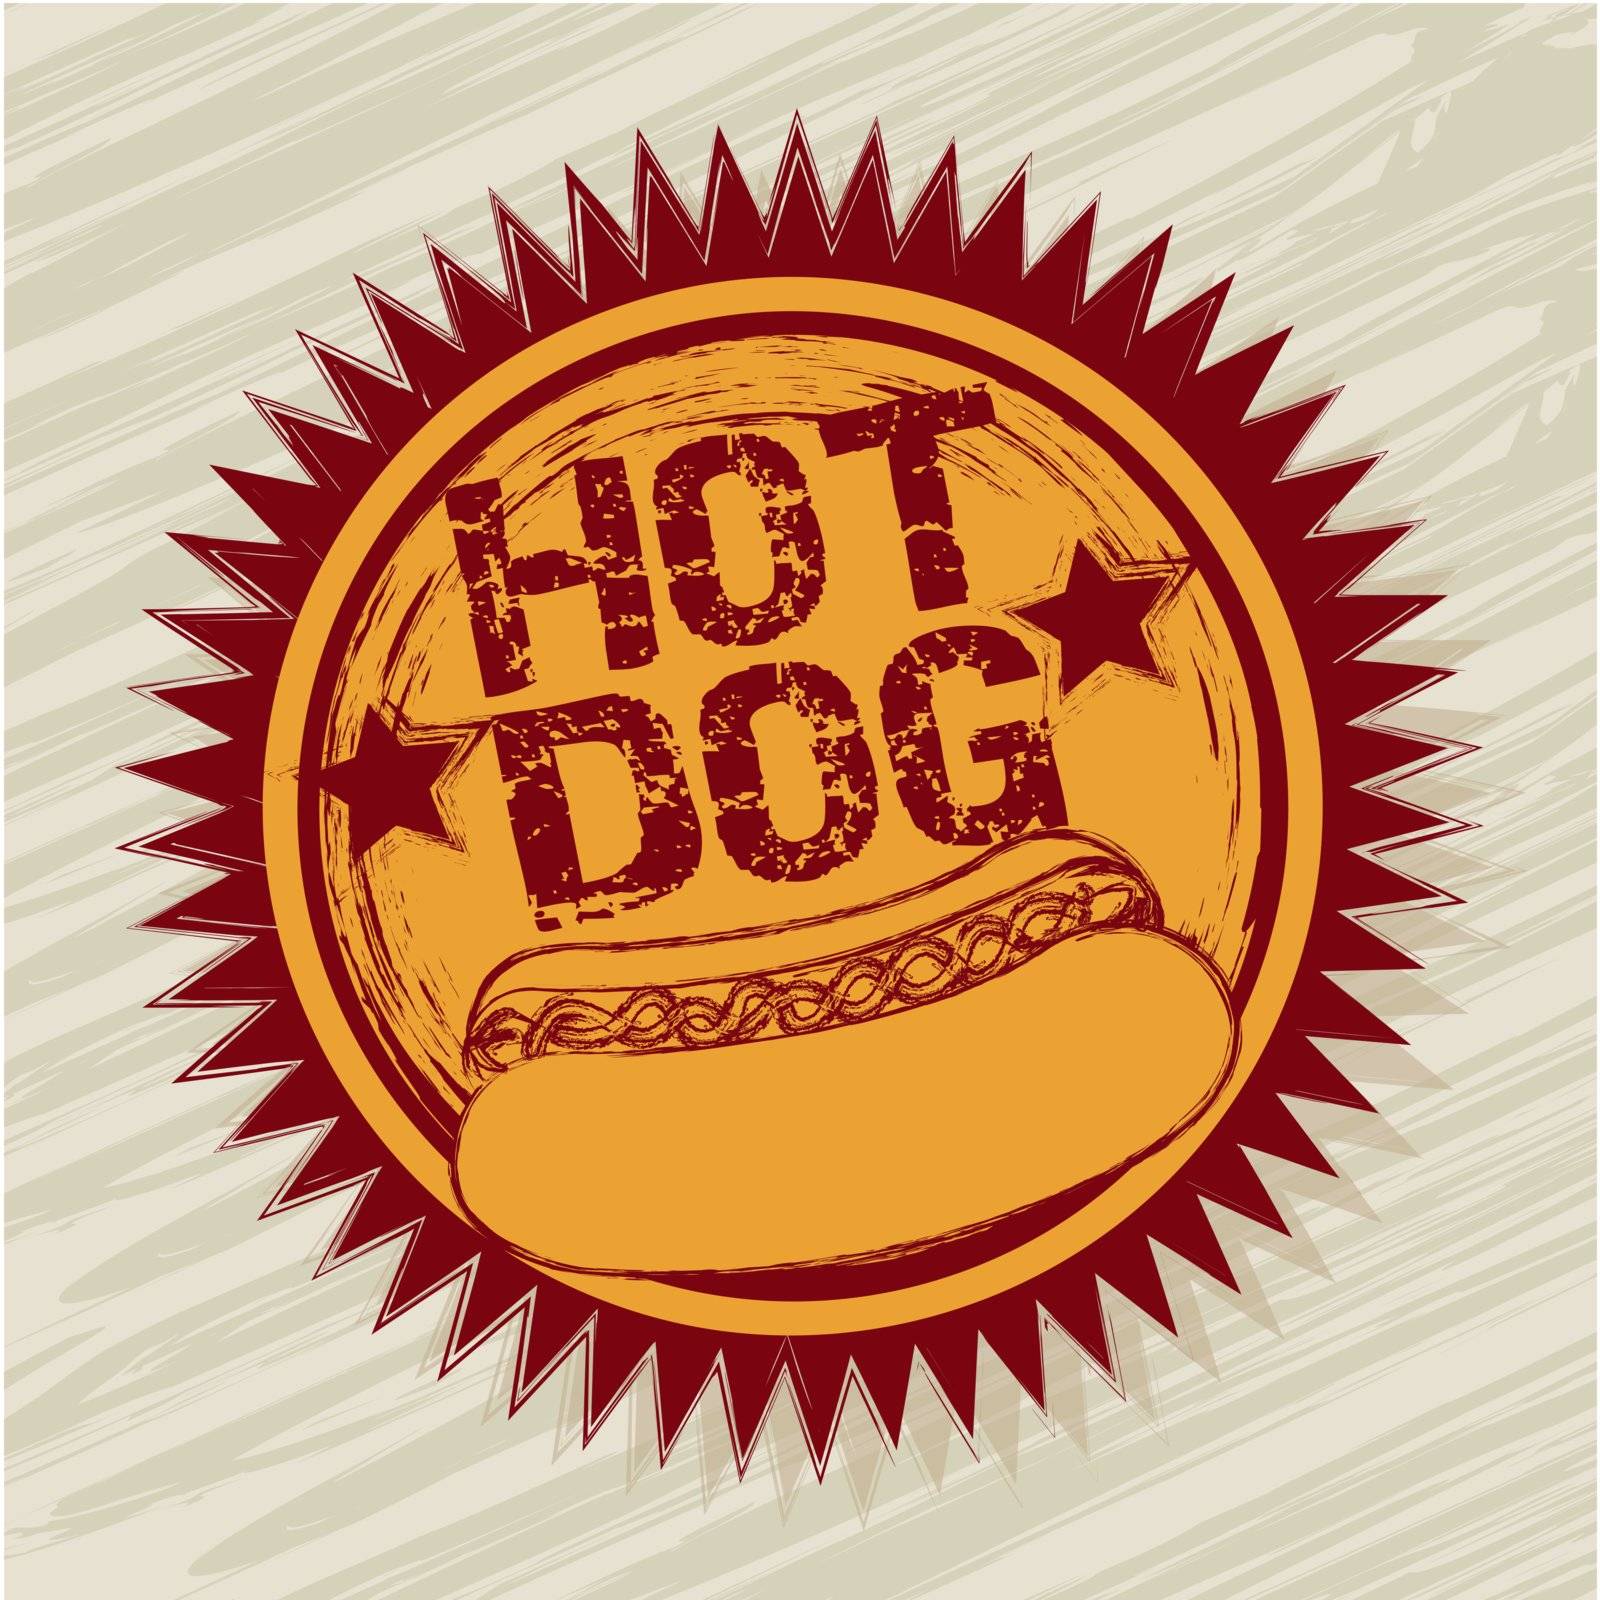 hot dog label over beige background. vector illustration